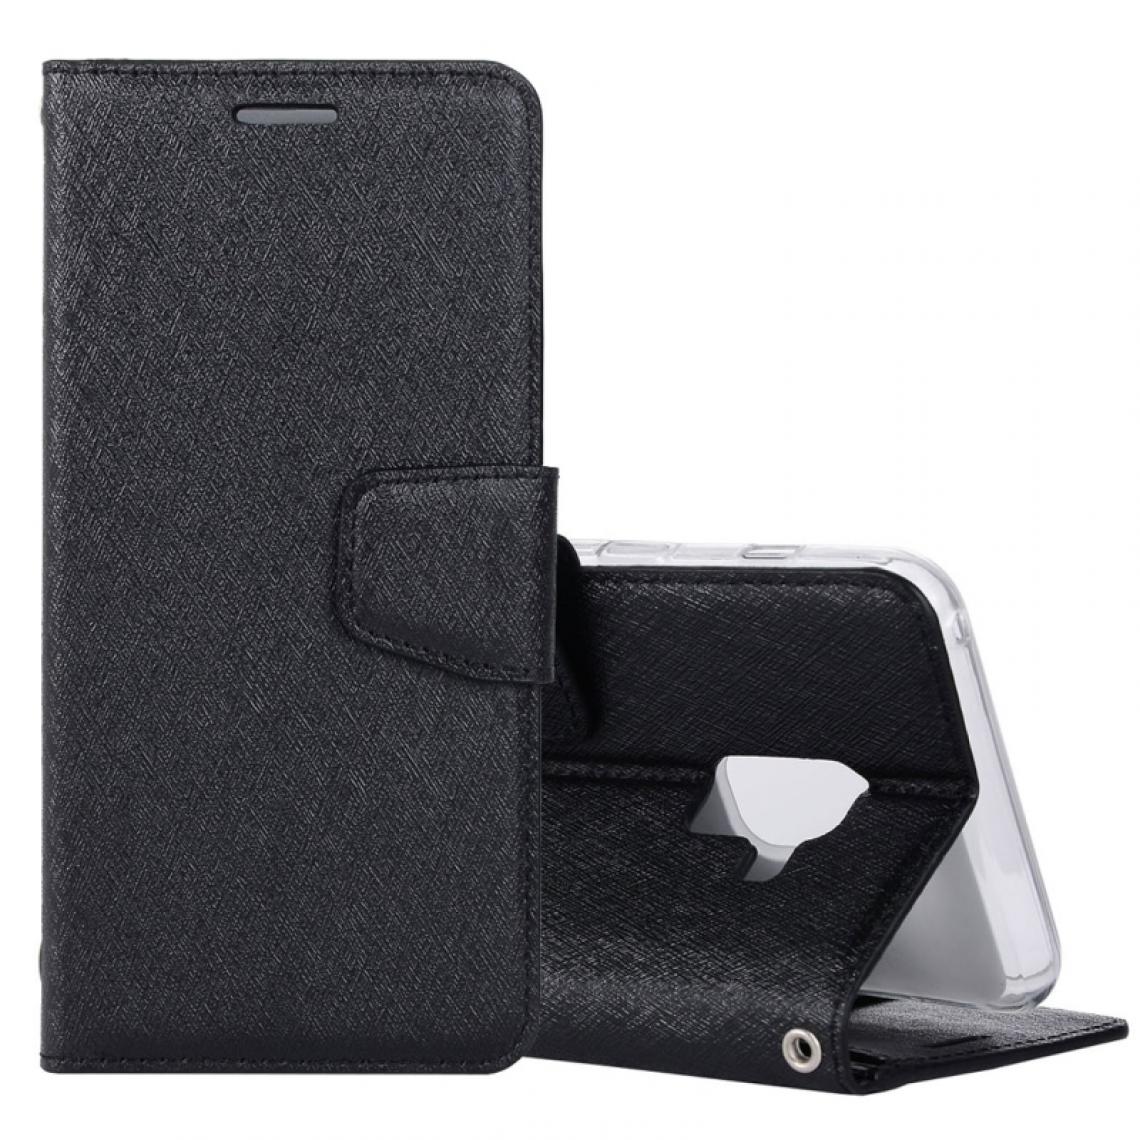 Wewoo - Housse Étui noir pour Samsung Galaxy A8 2018 Silk Texture Horizontal Flip en cuir avec titulaire et fentes cartes porte-monnaie cadre photo - Coque, étui smartphone